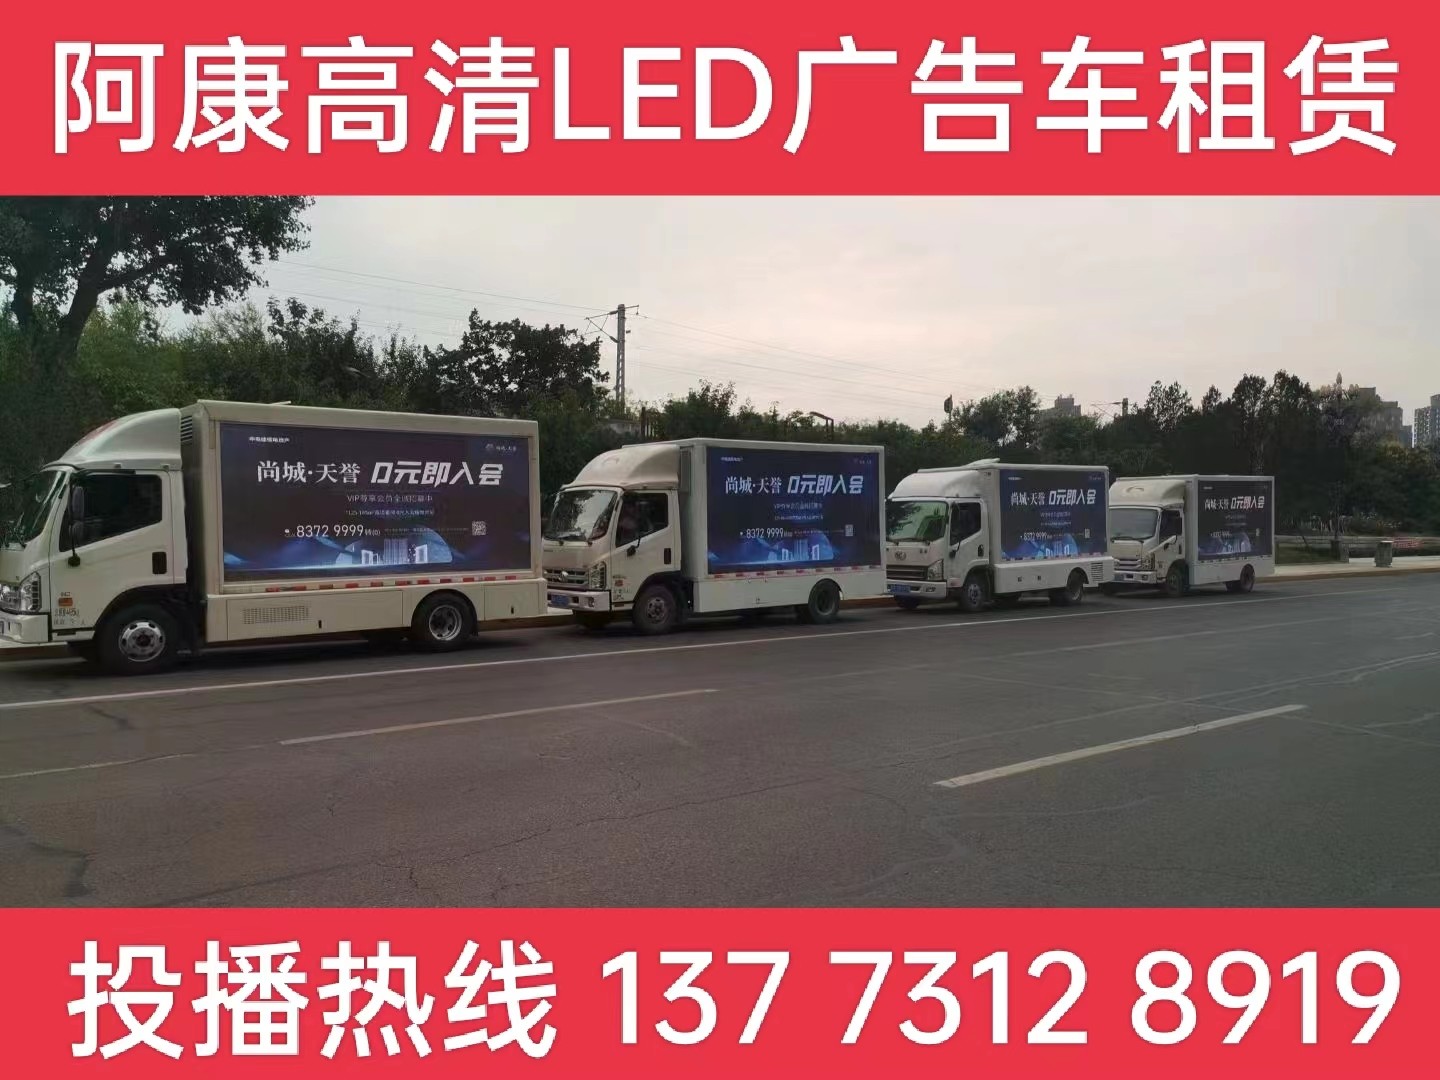 兴化LED广告车出租公司